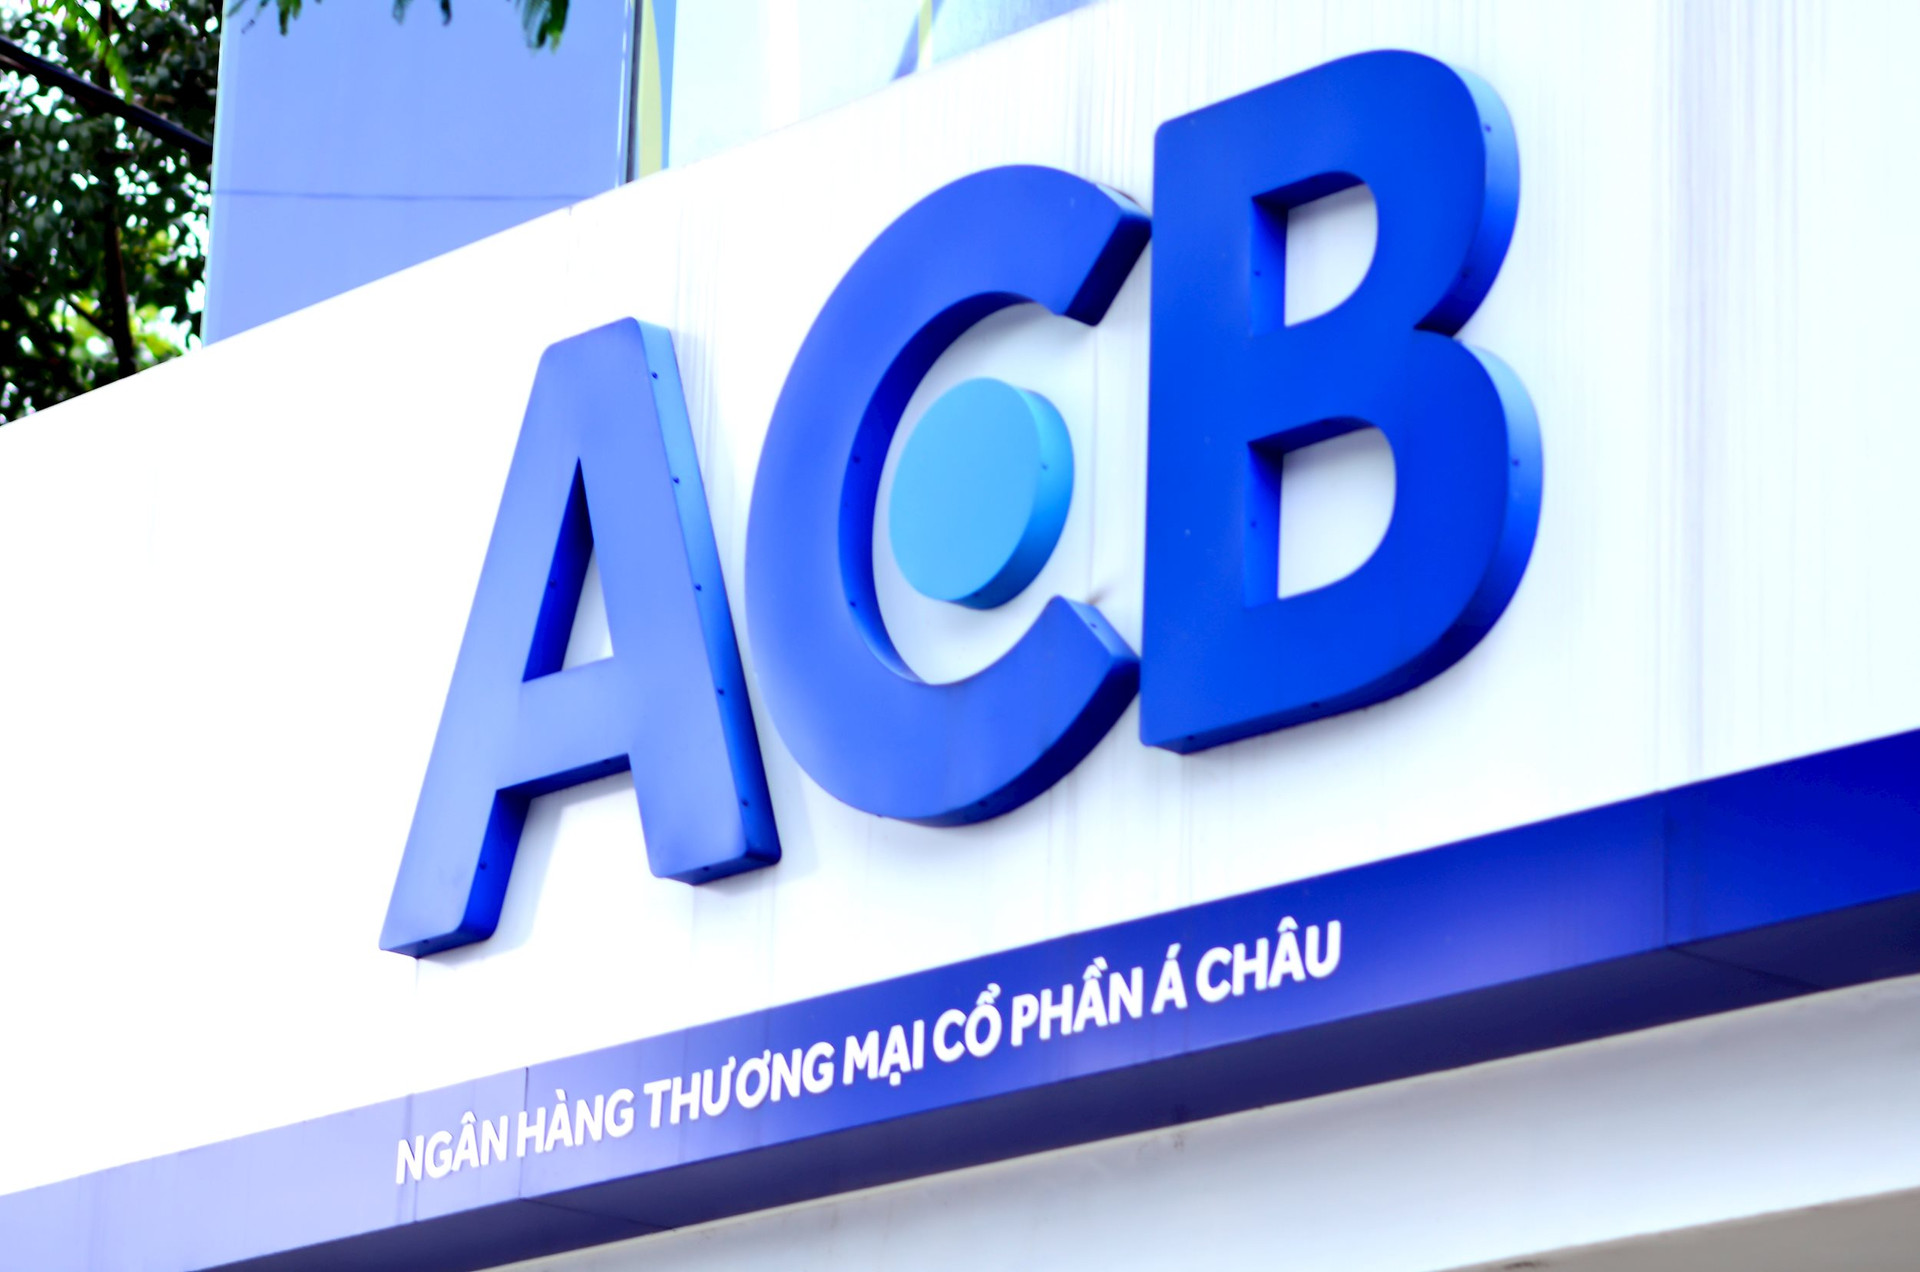 acb-logo.jpg